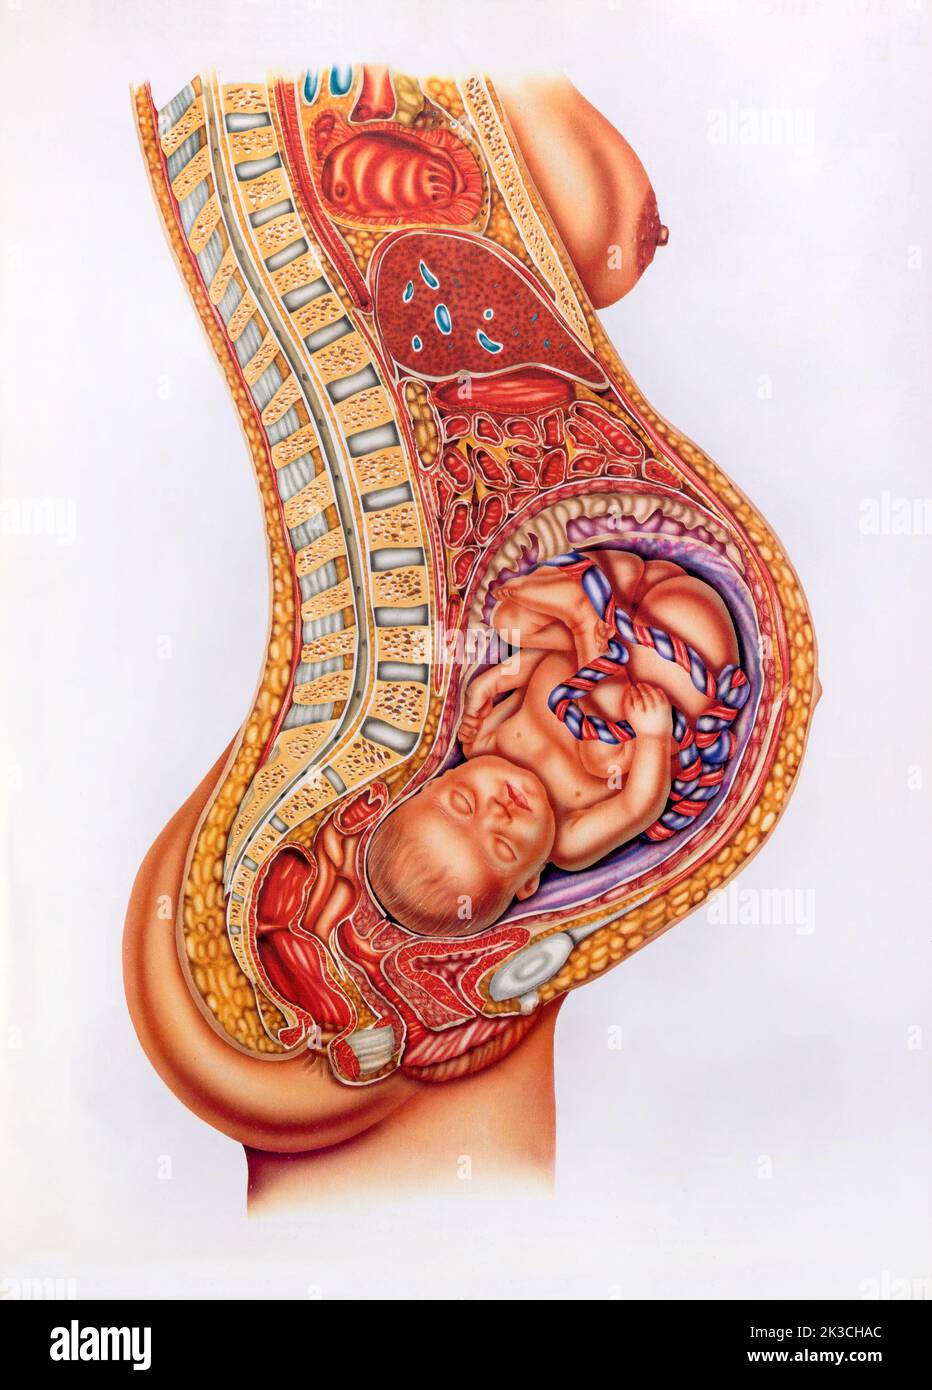 Immagine retrò sezionale del neonato con cordone ombelicale all'interno del ventre della madre incinta Foto Stock